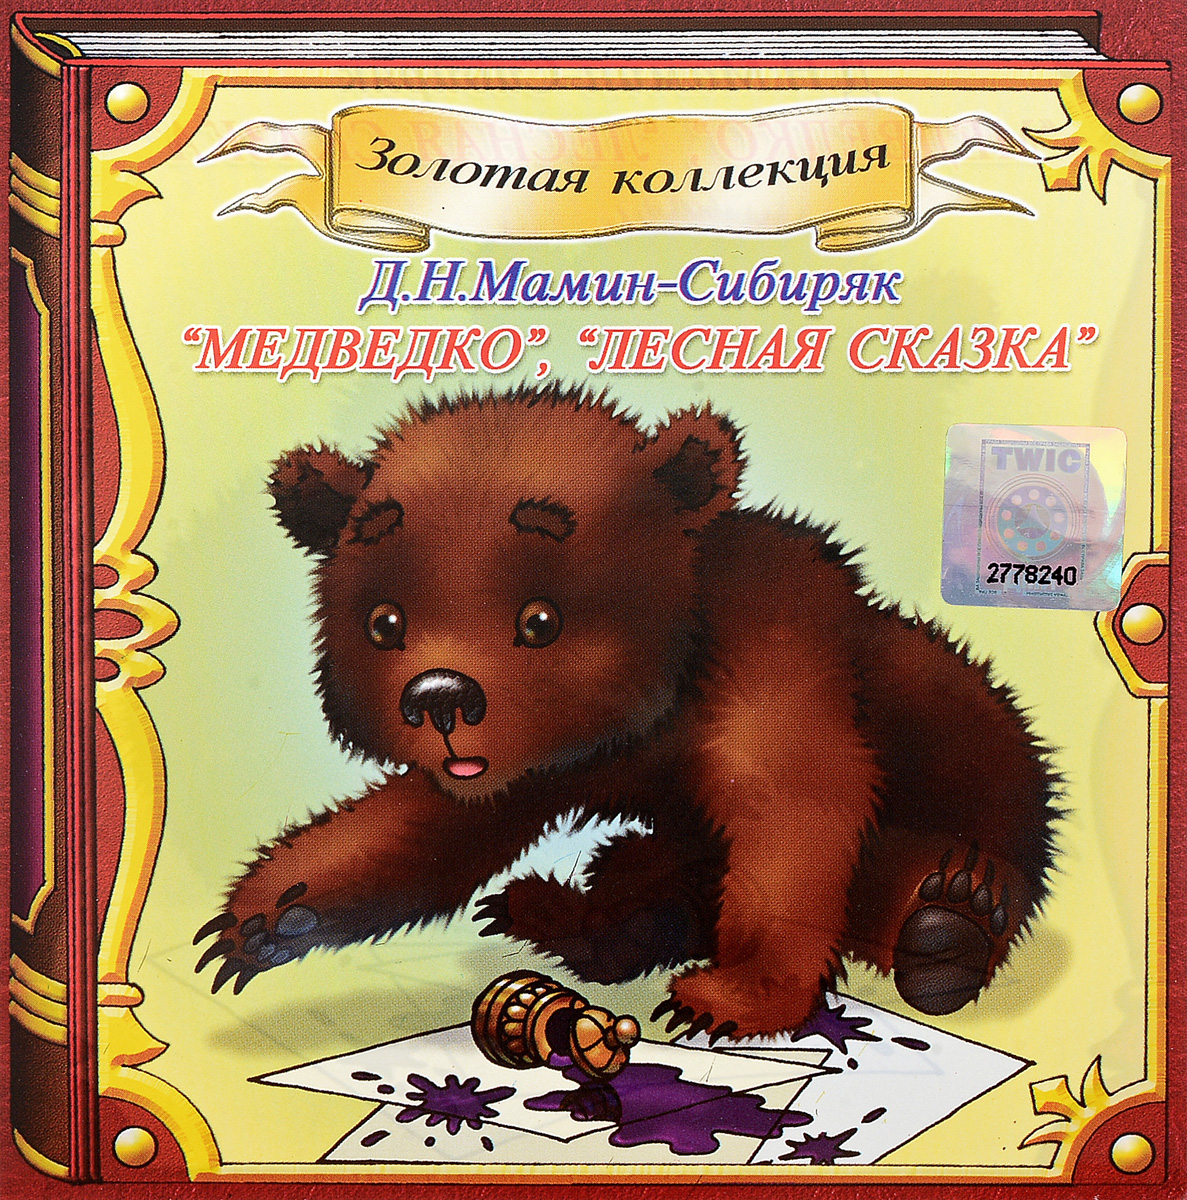 Сказка медведко читать онлайн бесплатно